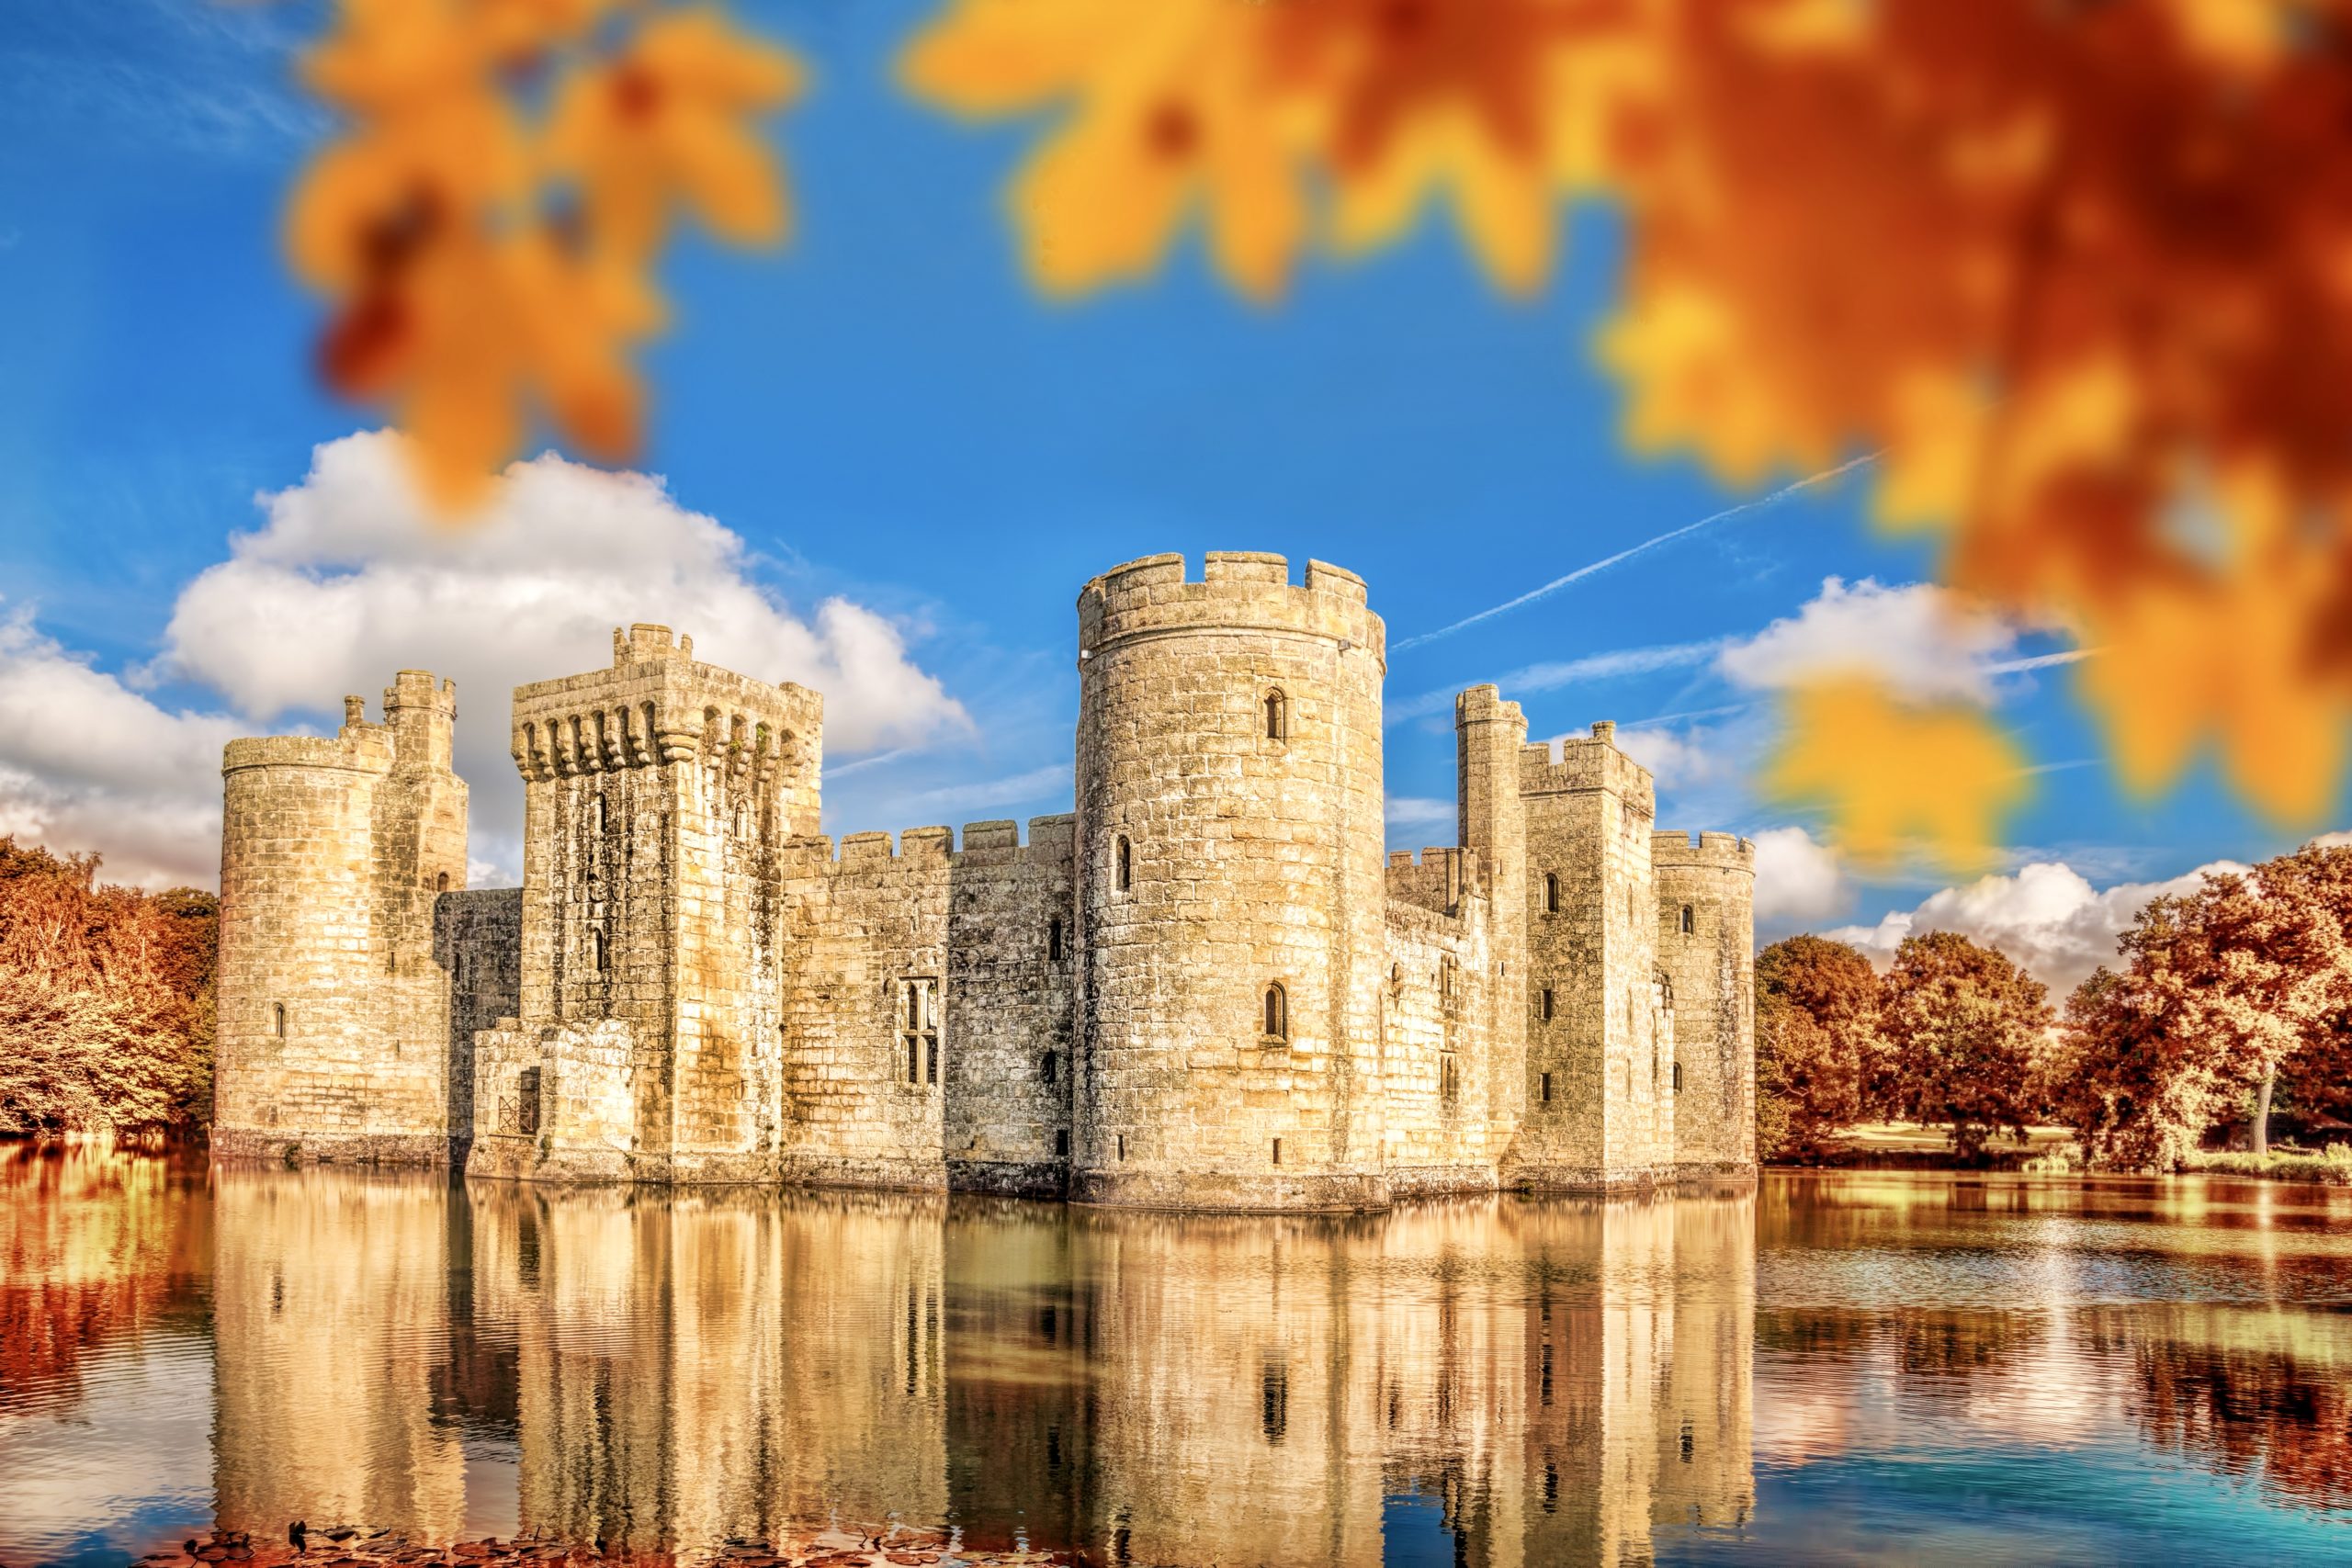 england castle tour packages